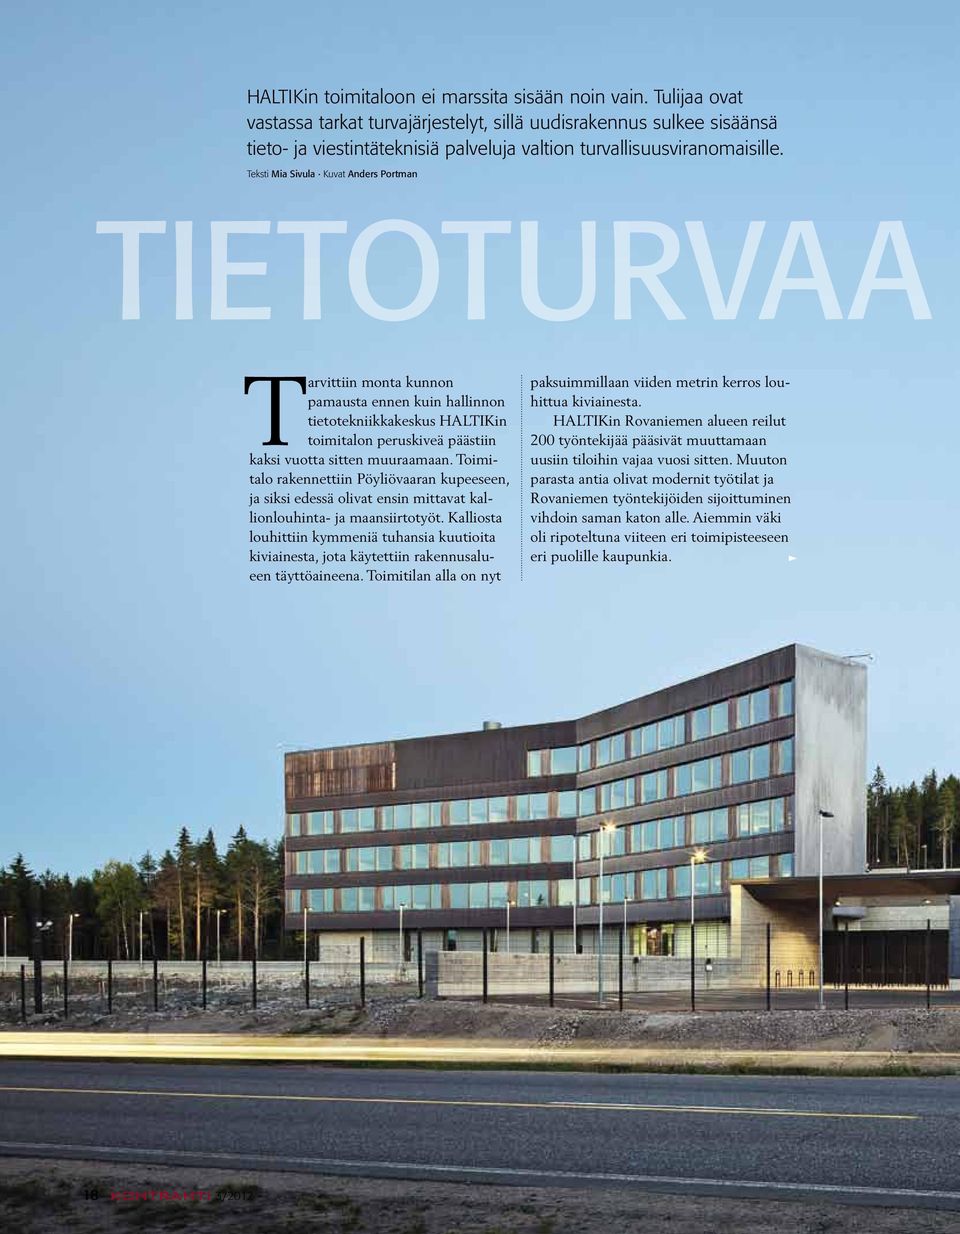 Teksti Mia Sivula Kuvat Anders Portman Tietoturvaa Tarvittiin monta kunnon pamaus ta ennen kuin hallinnon tietotekniikkakeskus HALTIKin toimitalon peruskiveä päästiin kaksi vuotta sitten muuraamaan.